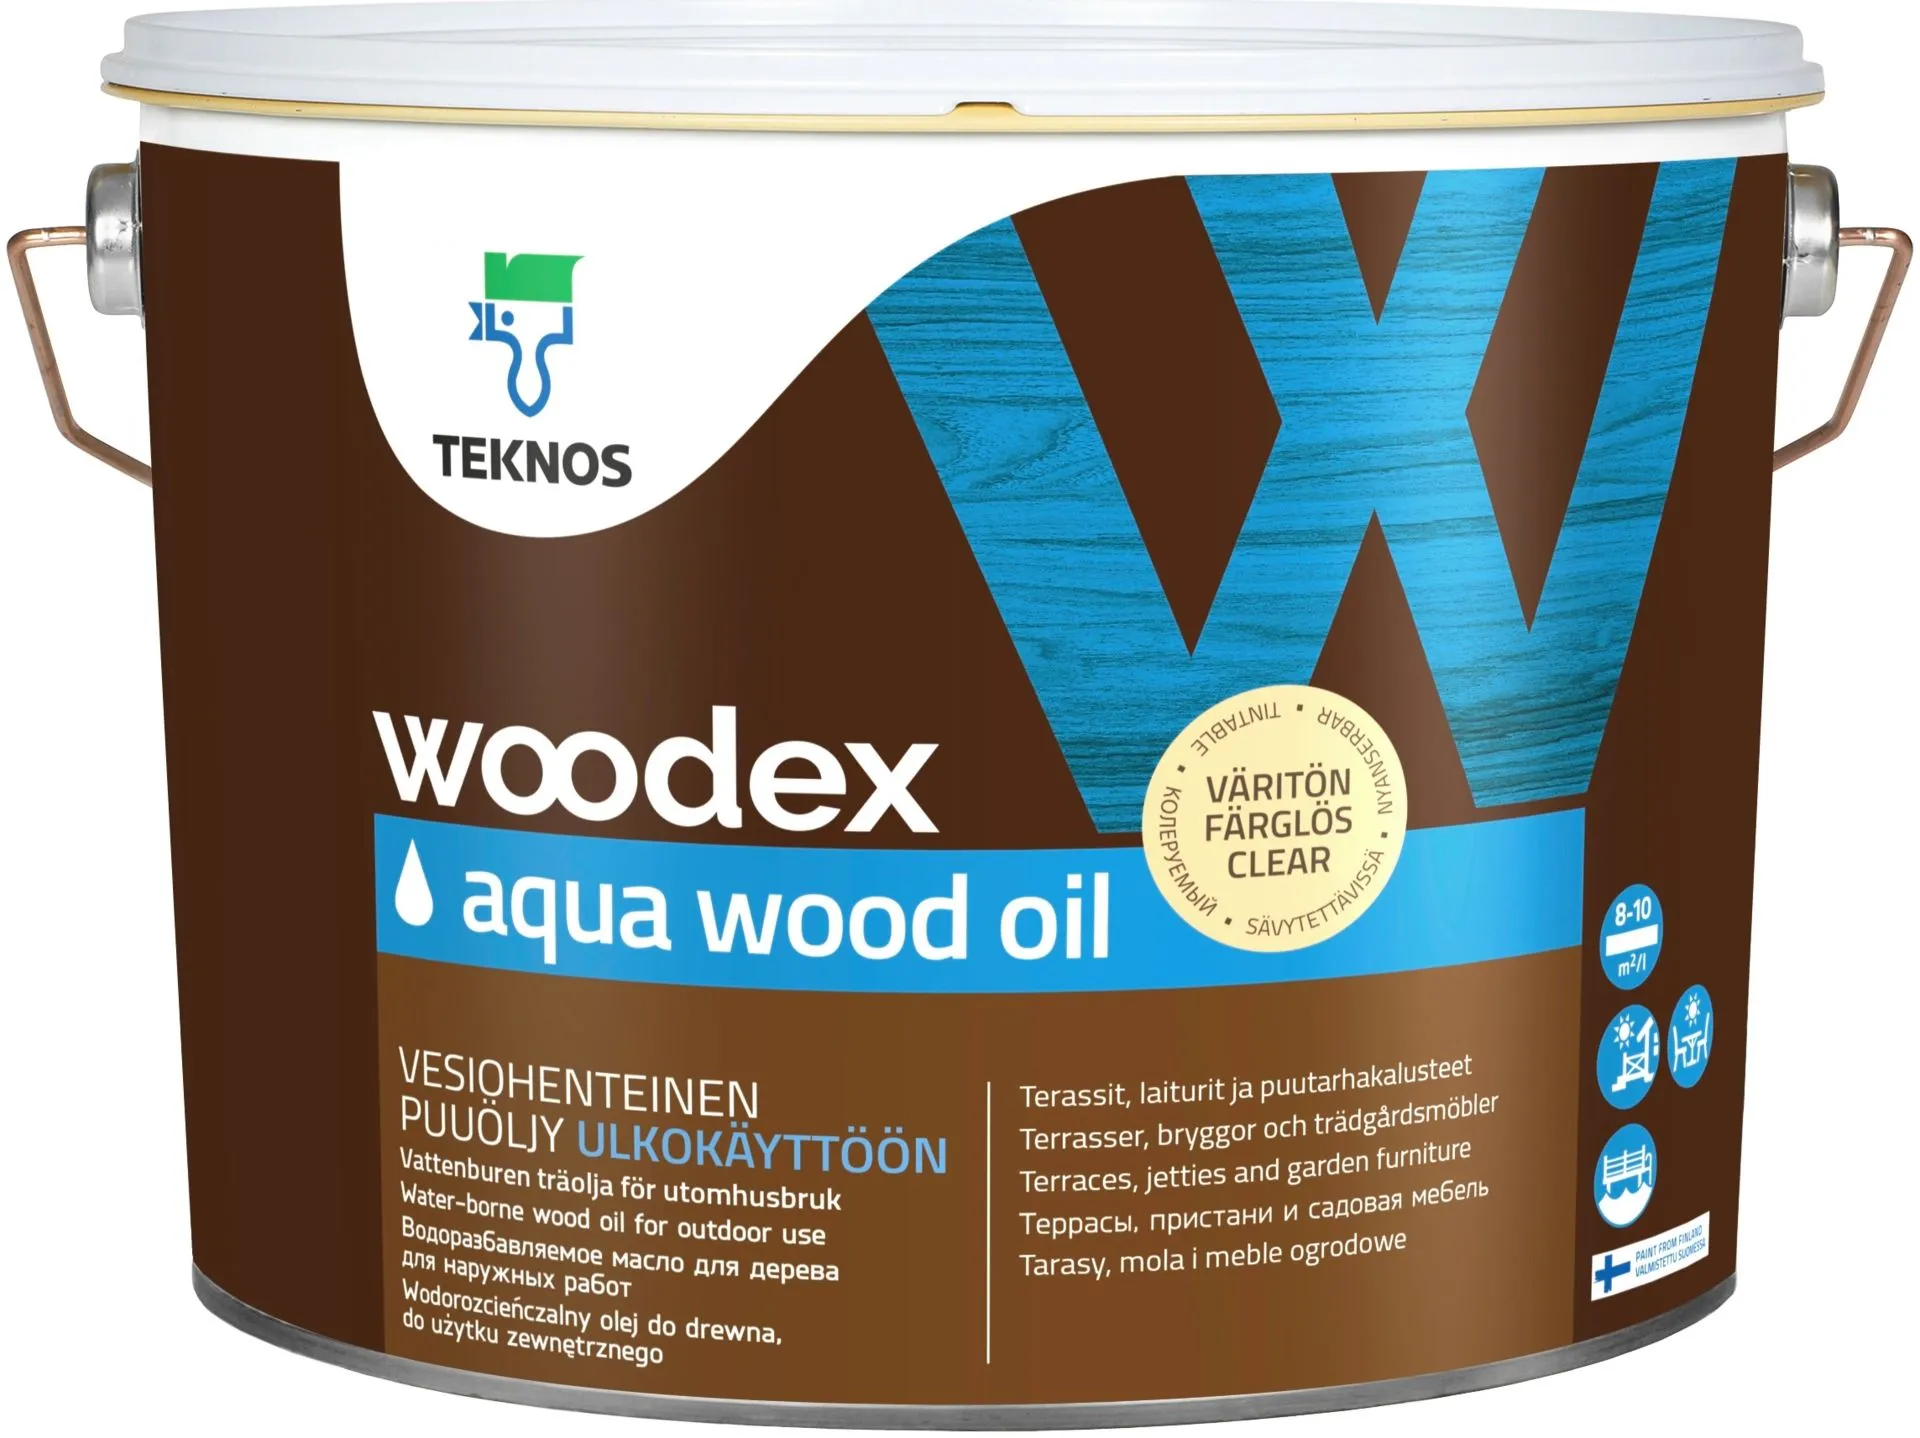 Teknos puuöljy Woodex Aqua Wood Oil 9 l väritön sävytettävä